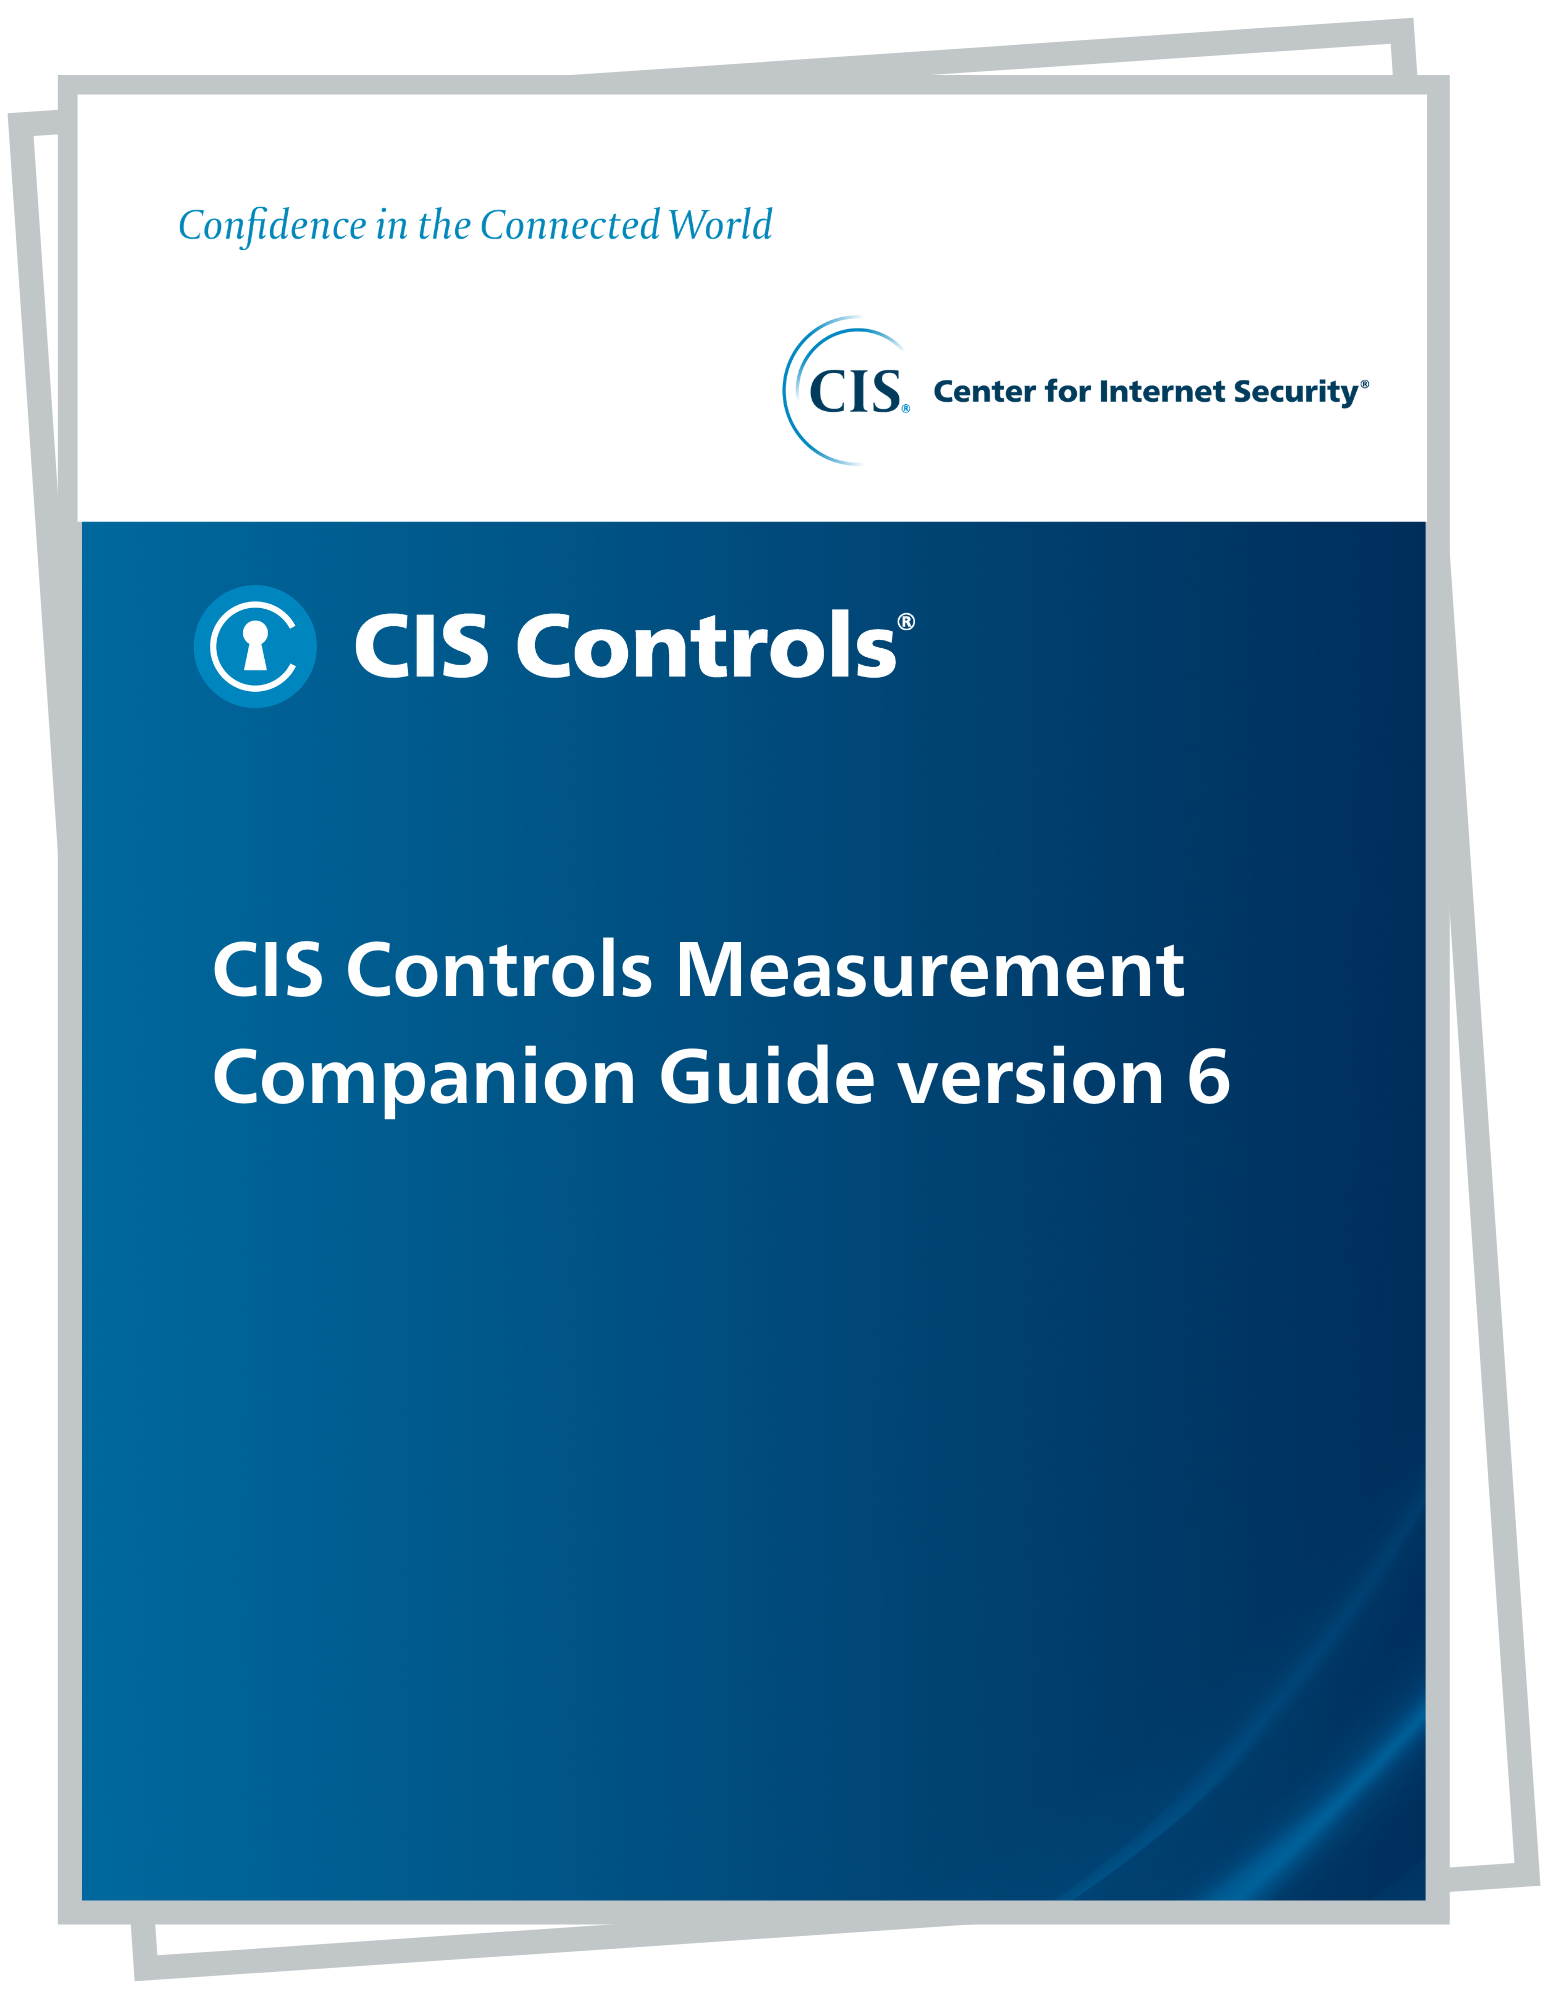 CIS Controls Measurement Companion Guide version 6